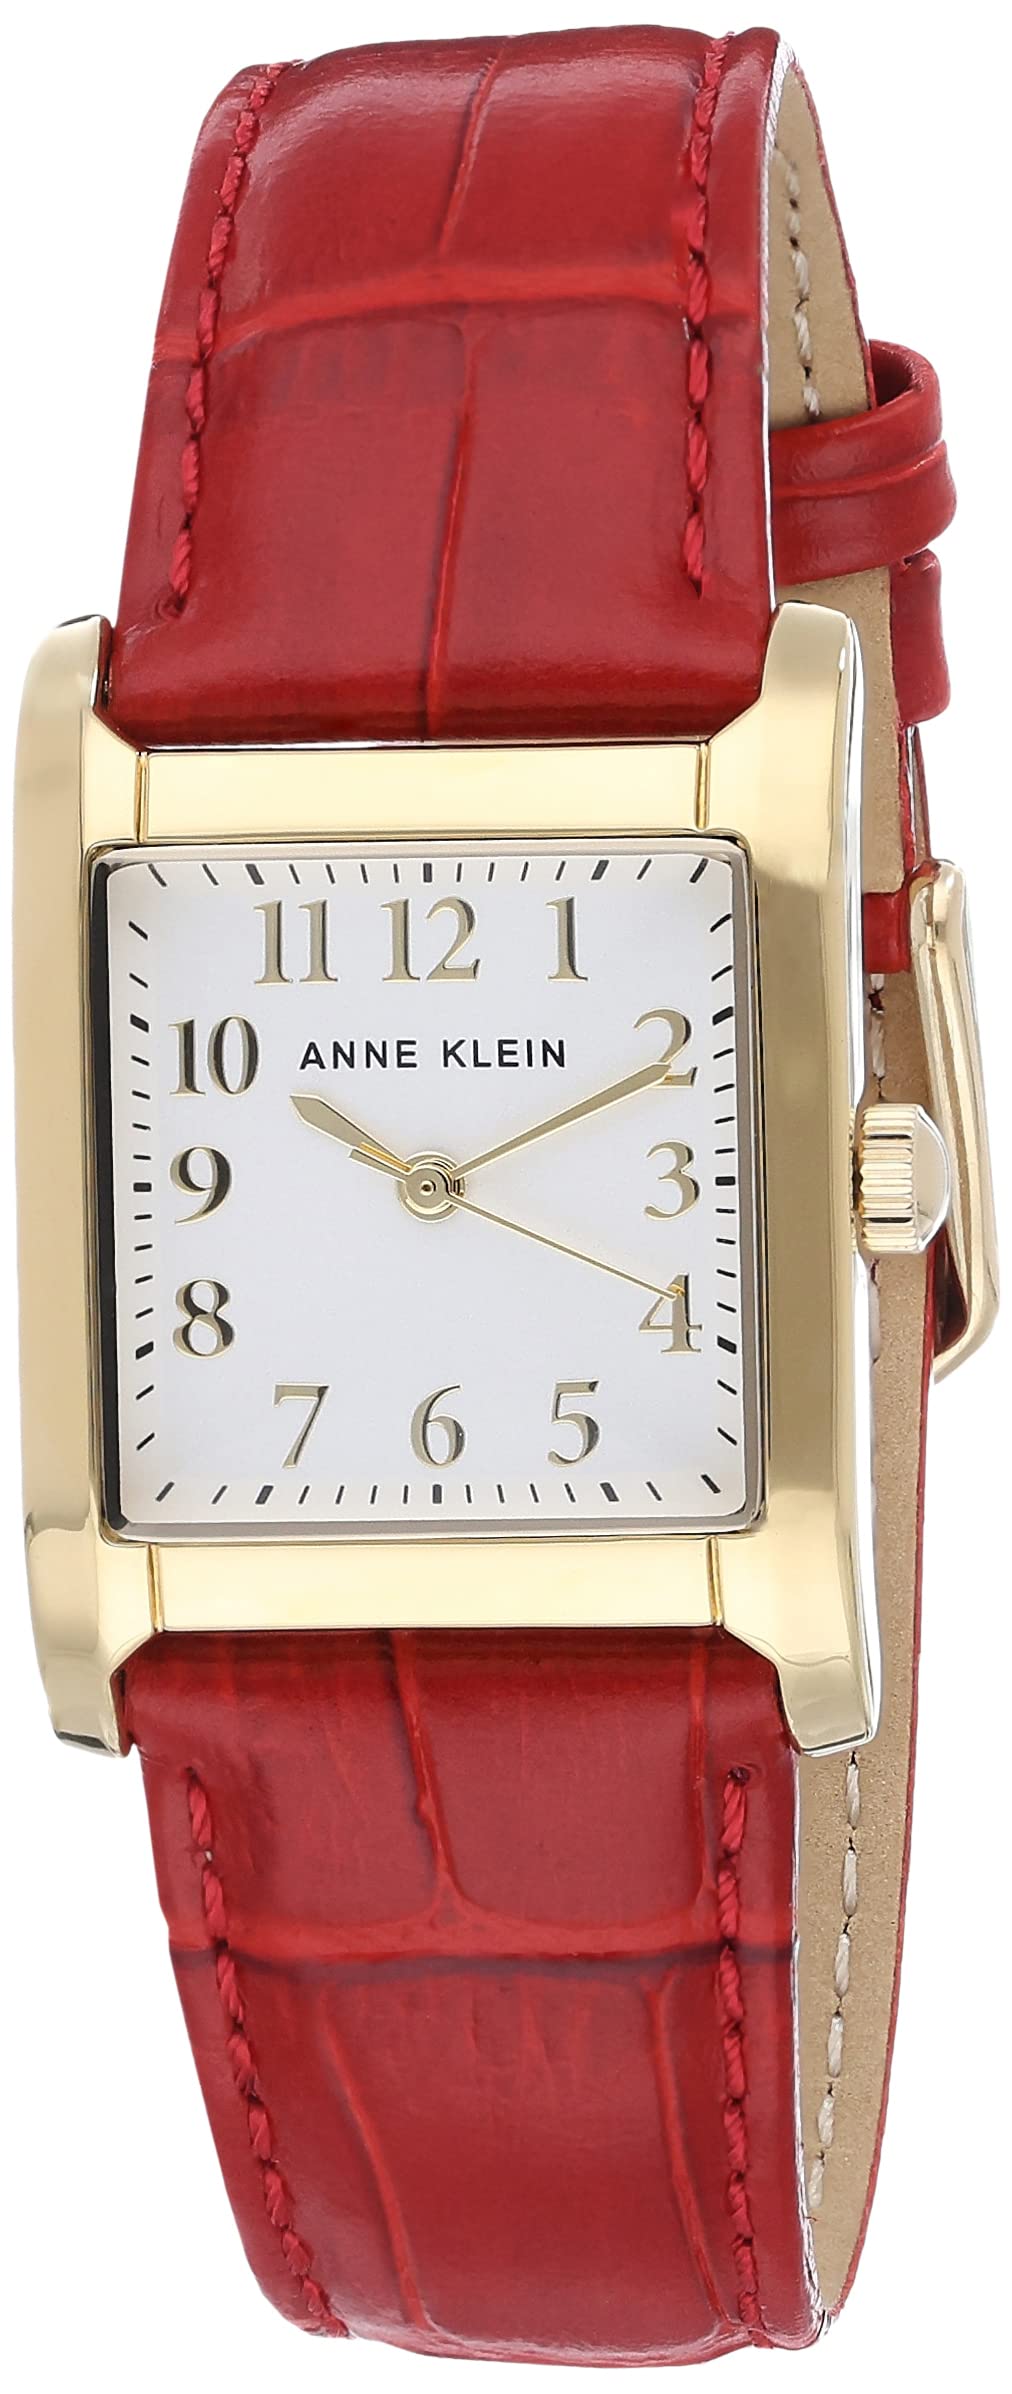 Anne Klein Women's Croco-Grain Leather Strap Watch